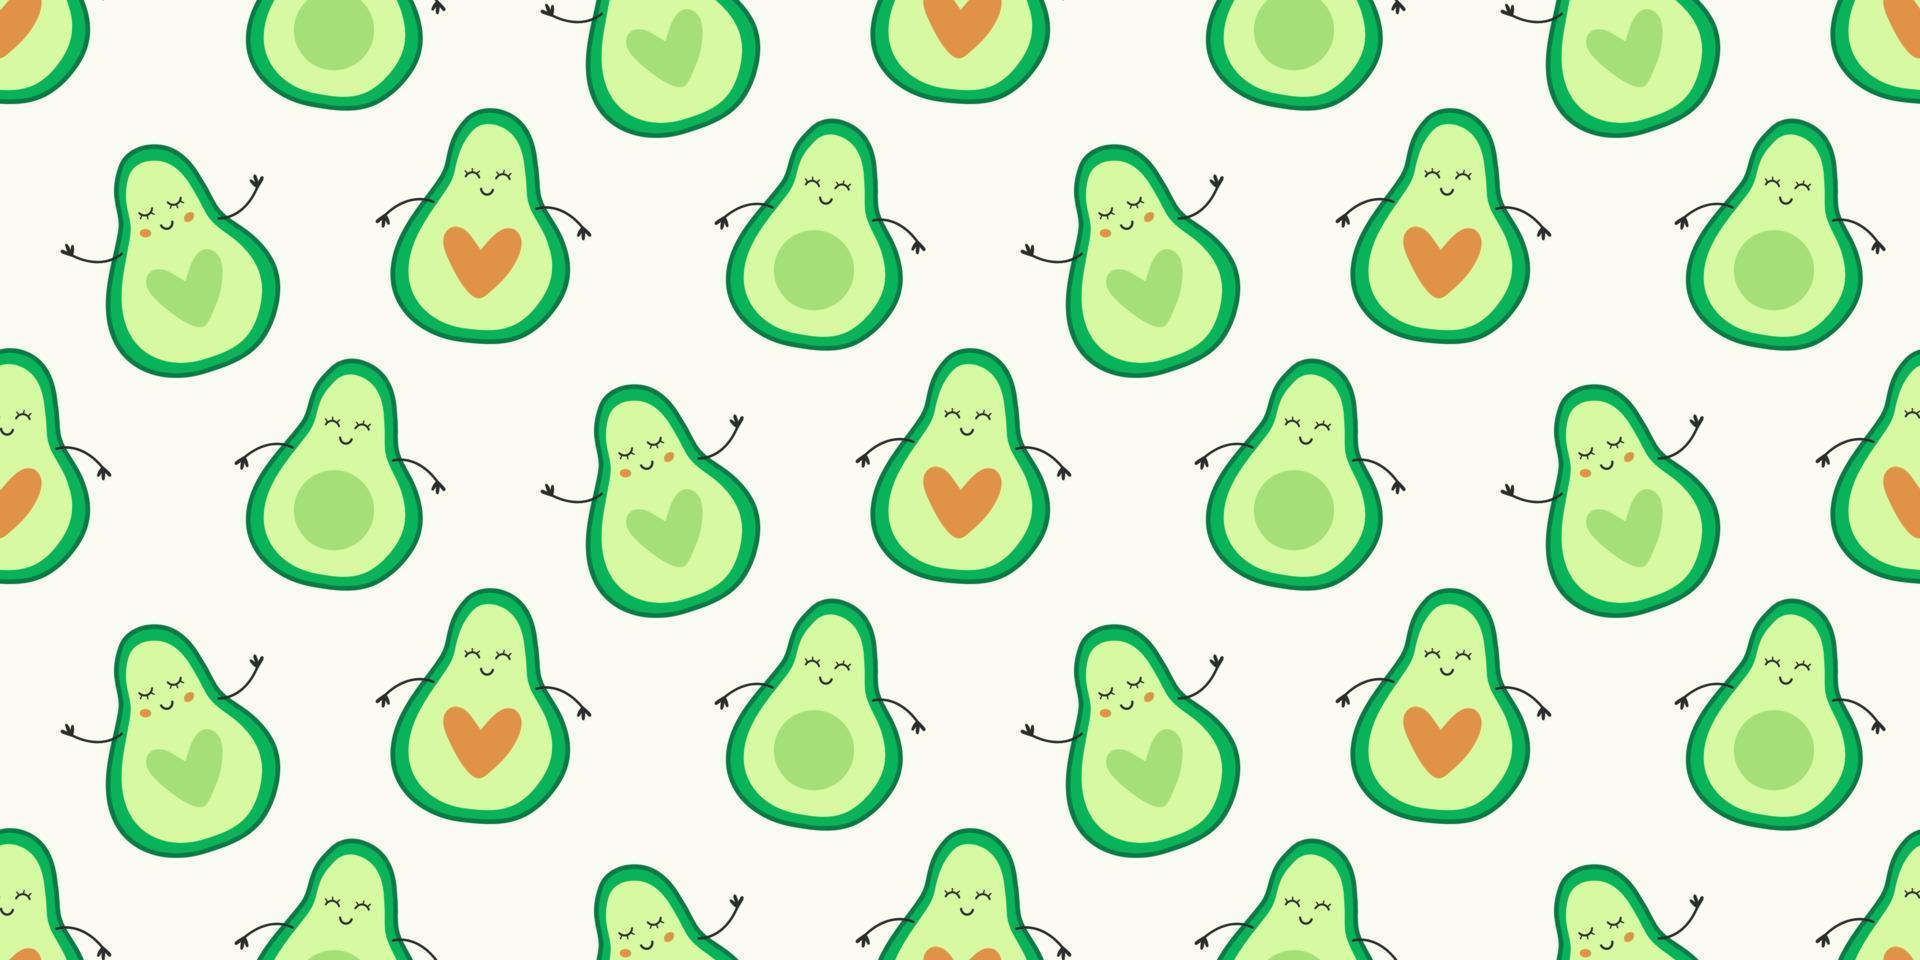 schattig avocado naadloos patroon achtergrond met harten vormen vector